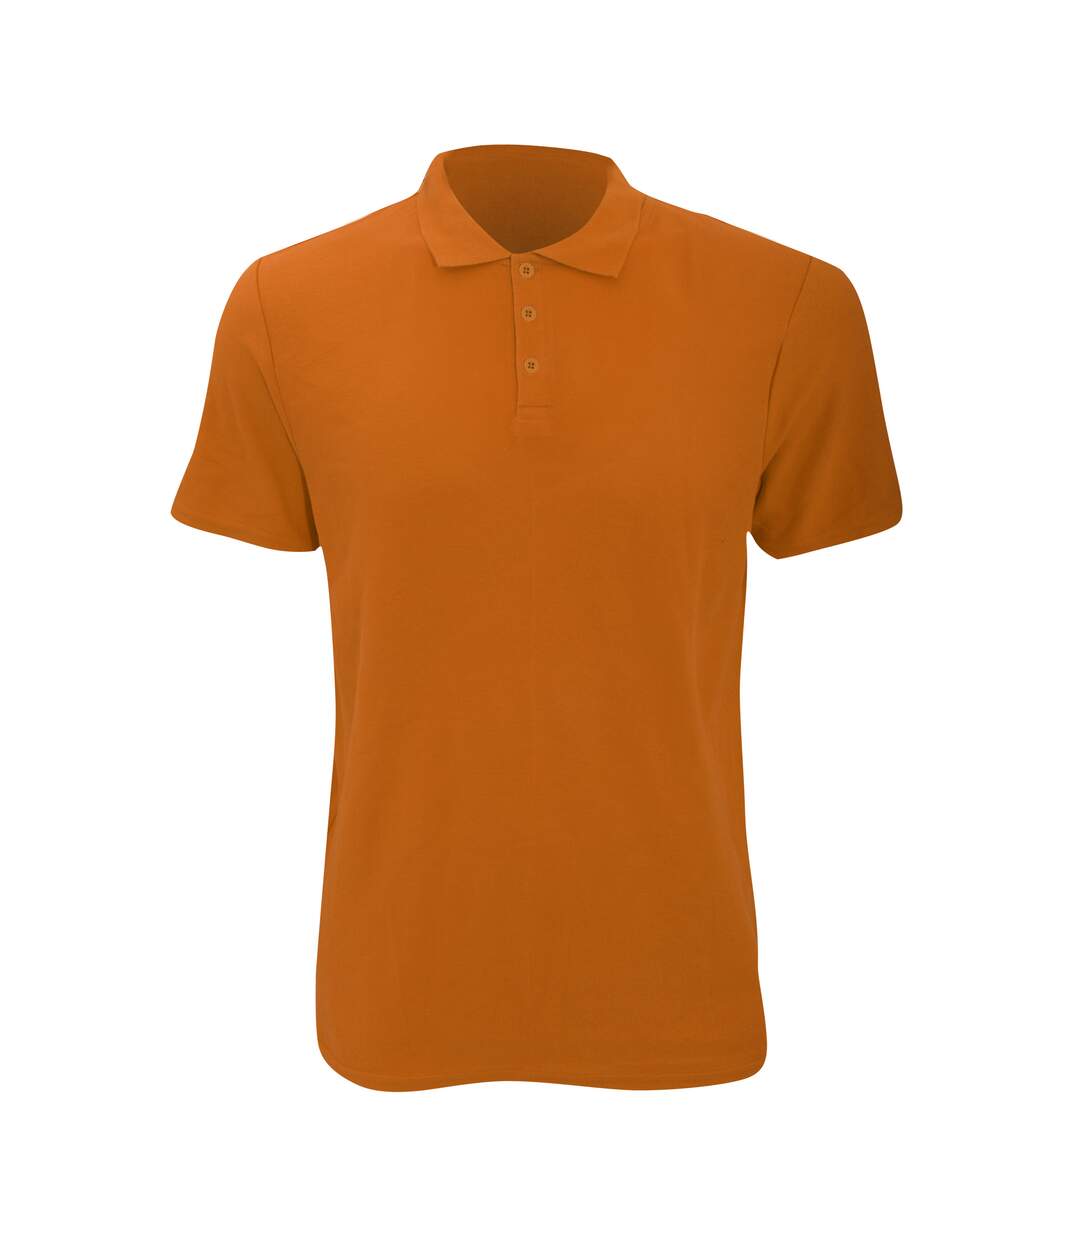 Anvil - Polo à manches courtes 100% coton - Homme (Orange mandarin) - UTRW2535